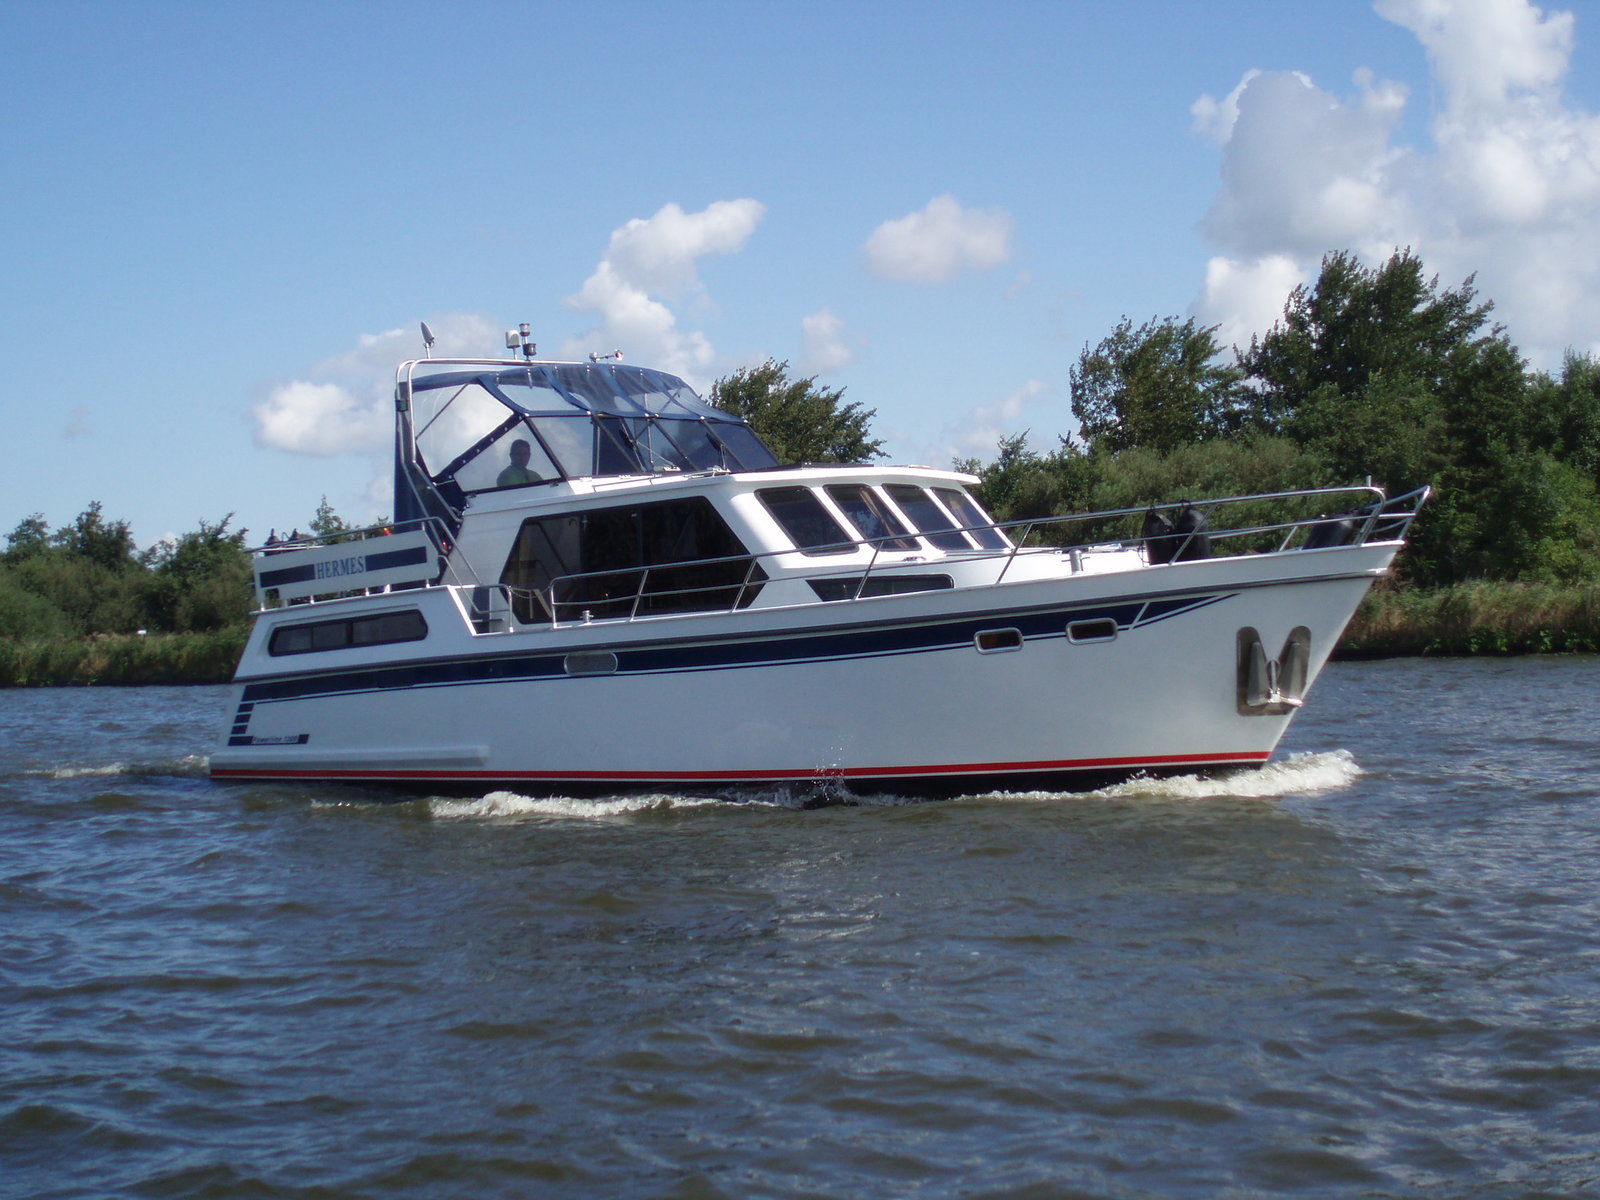 Ontwikkelen Omgekeerd Buitenboordmotor Motorboot 'Hermes' huren in Friesland | Stoeten bootverhuur Lemmer